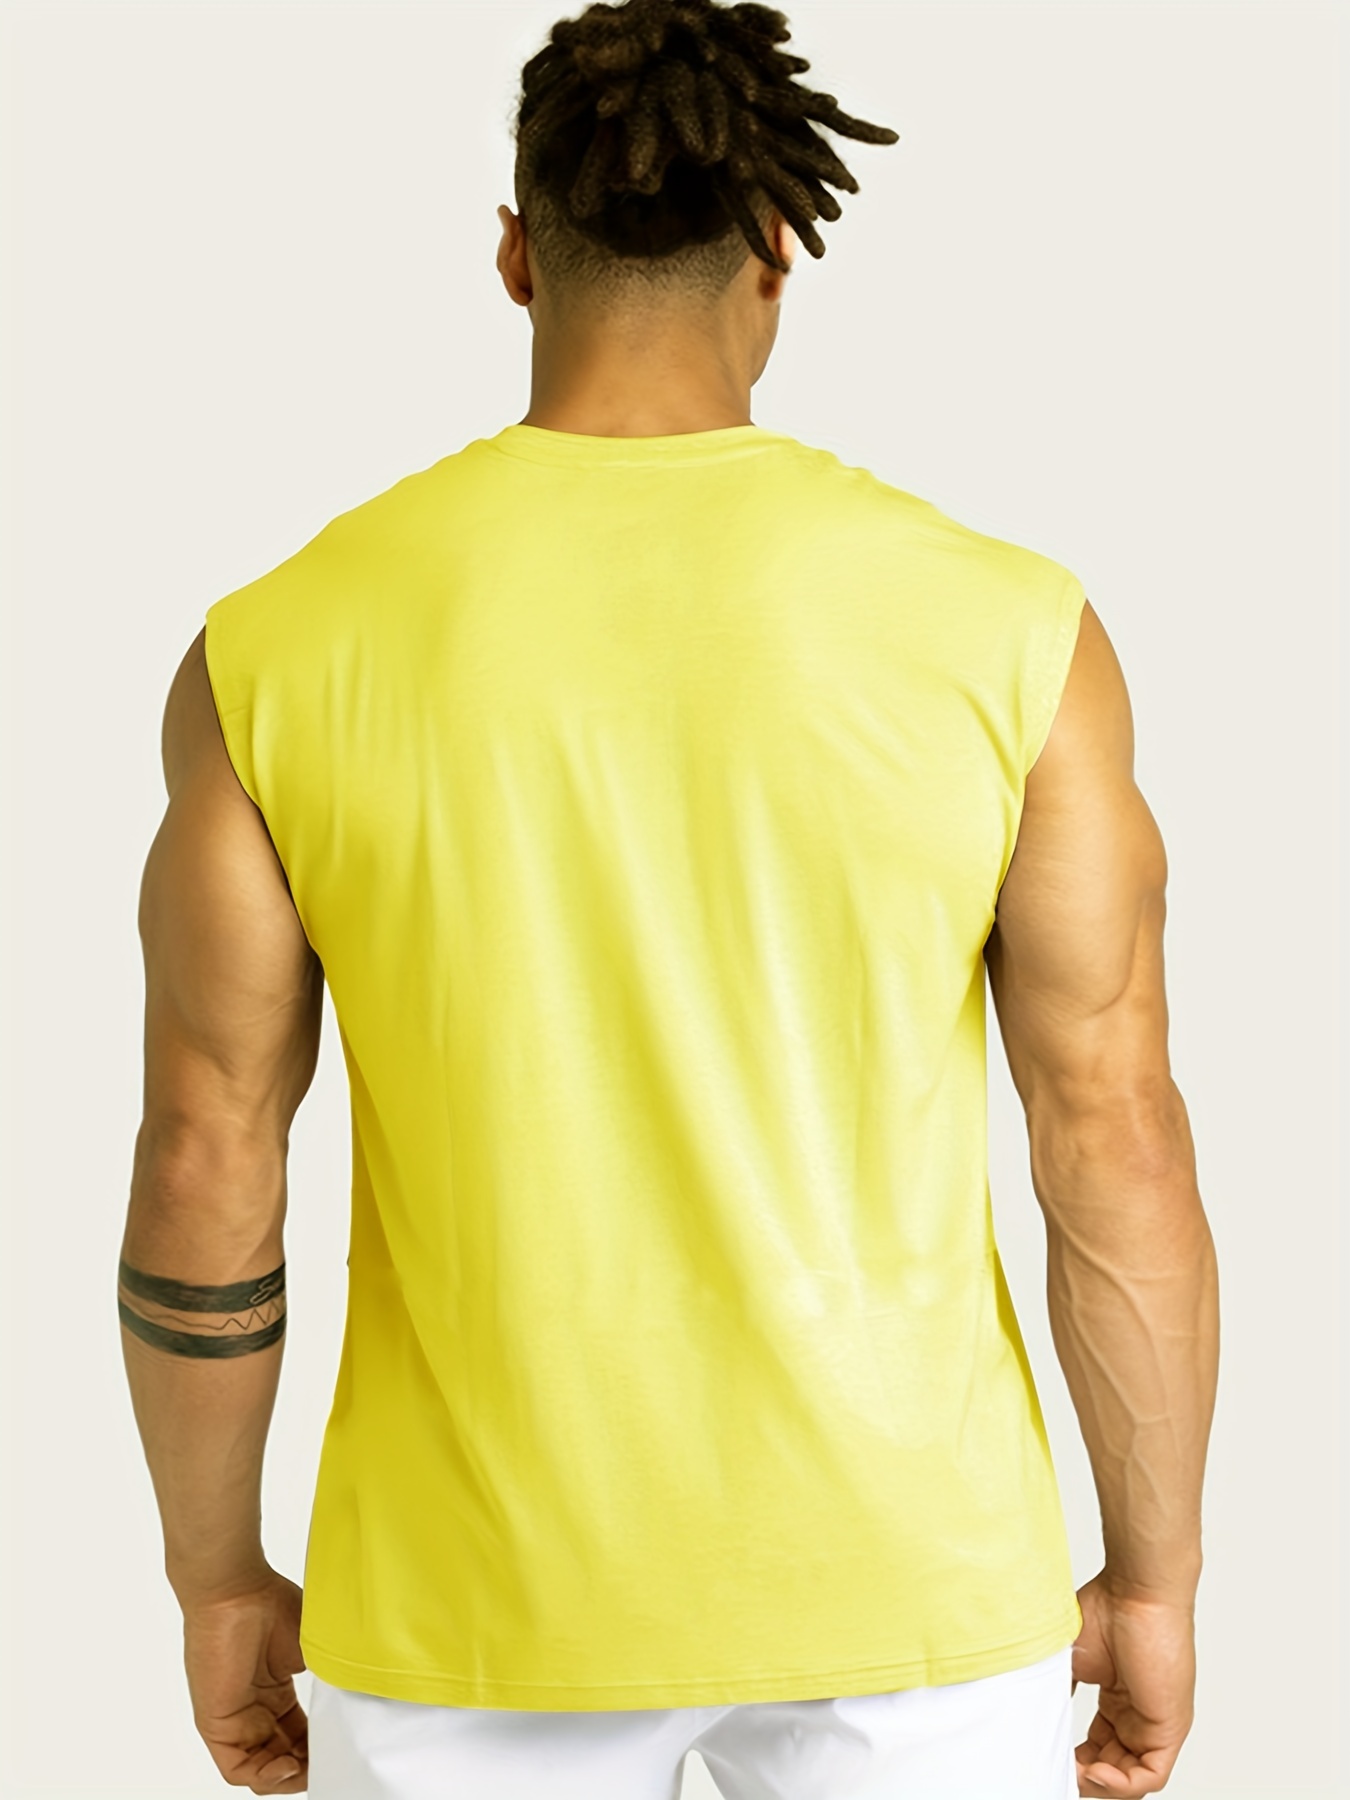 Camiseta sin mangas para hombre, camiseta sin mangas para entrenamiento,  culturismo, muscular, espalda en Y, gimnasio, fitness, chaleco de